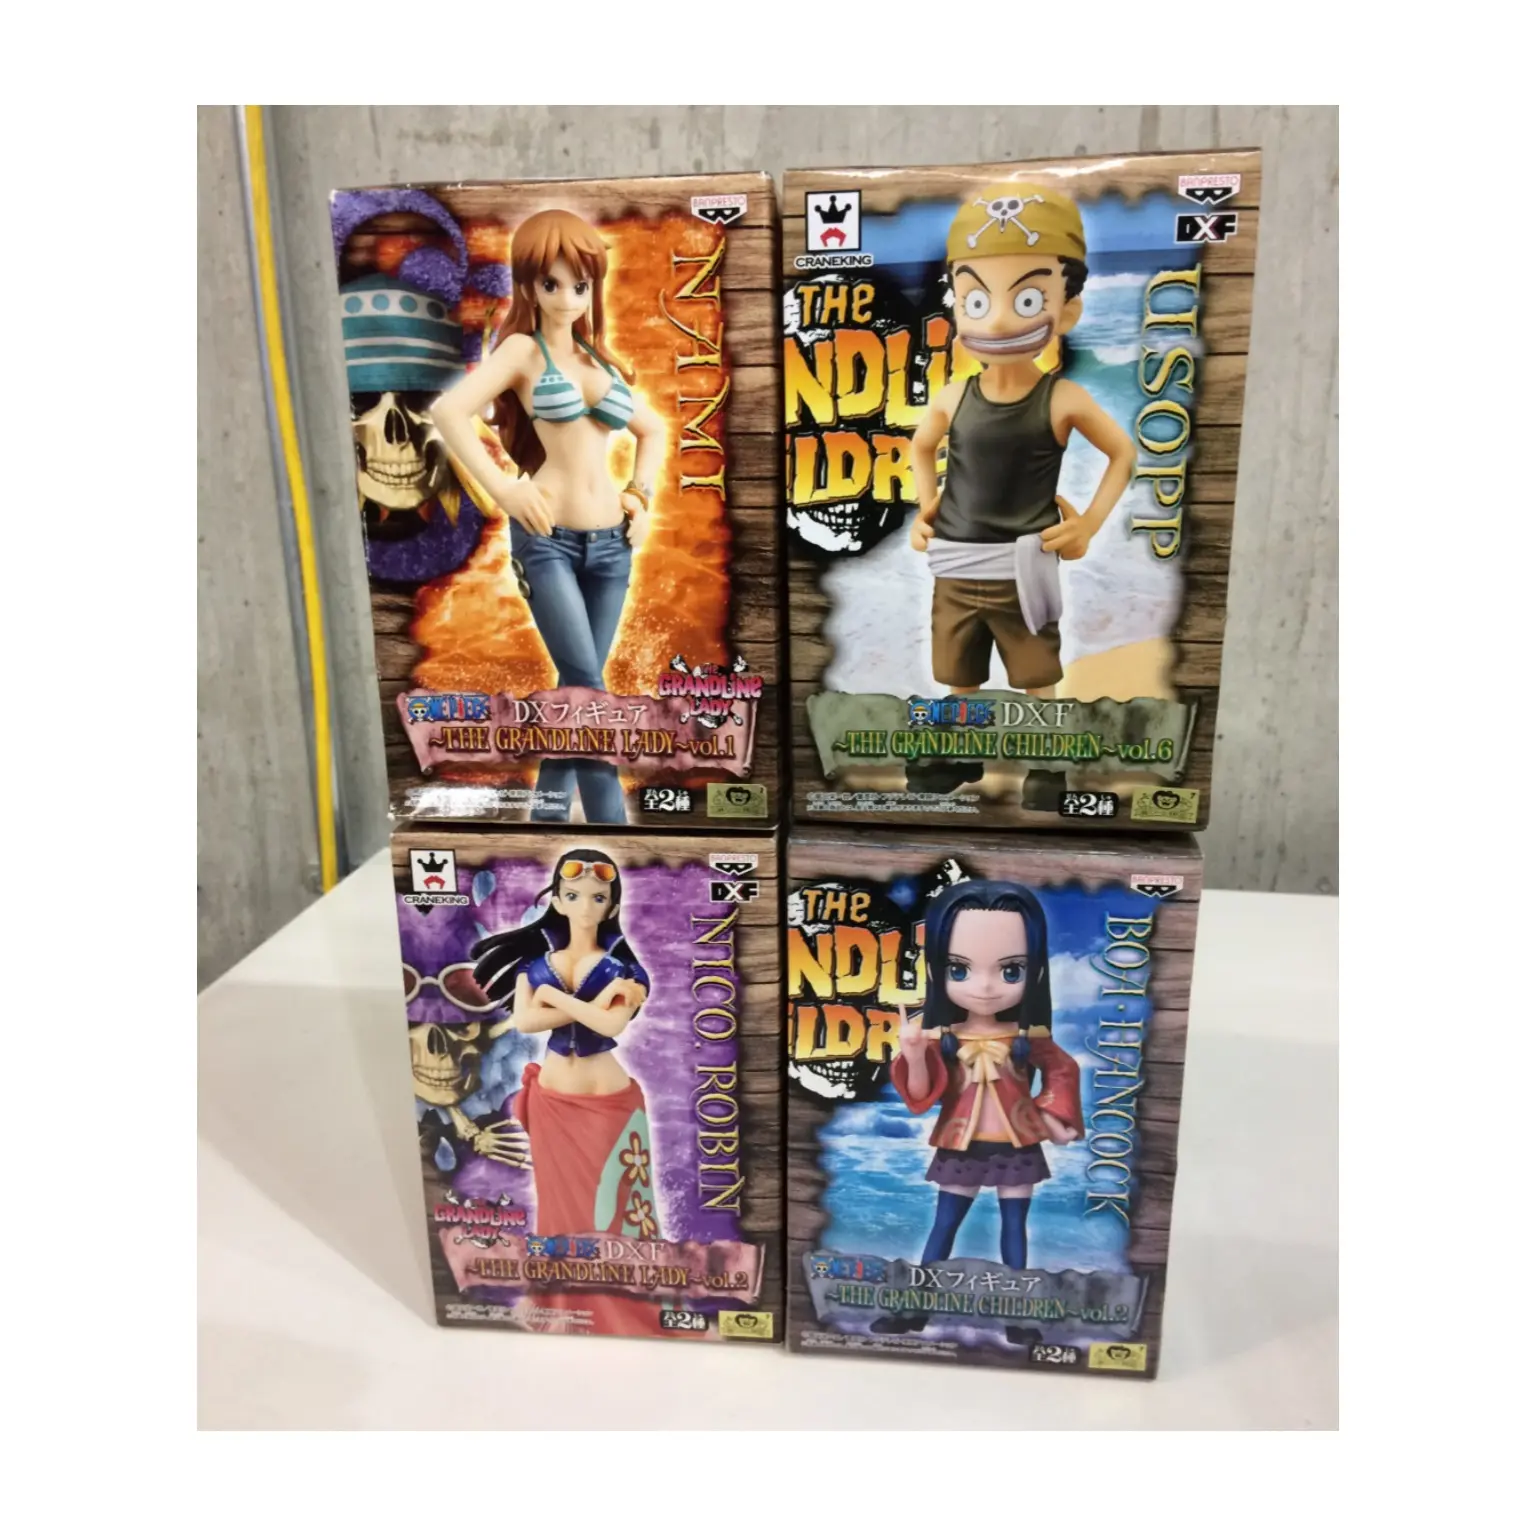 人気の高い日本アニメPVCフィギュアを賞品として箱入りで販売